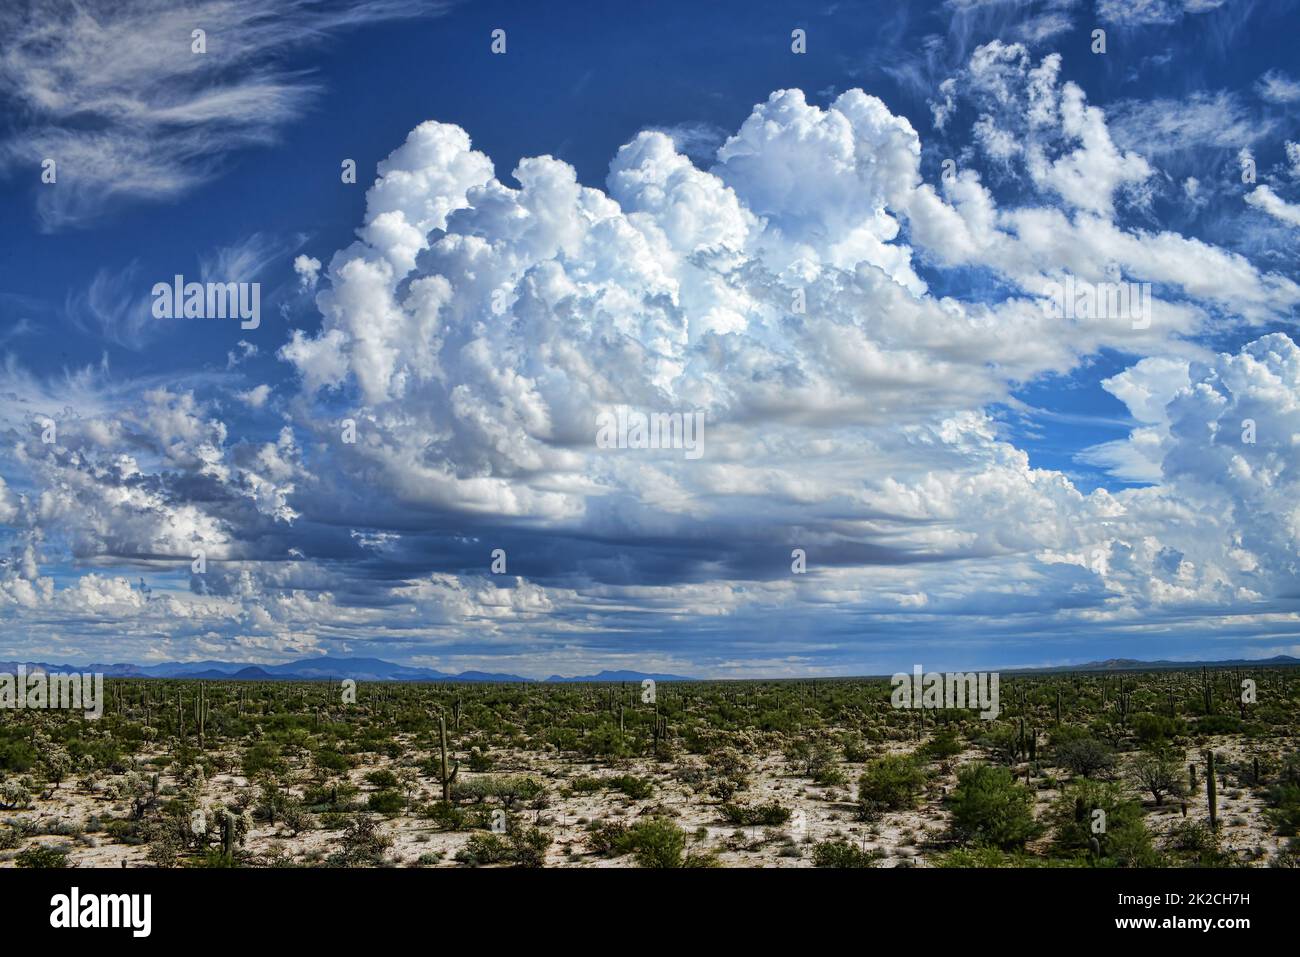 Sonora Desert Arizona Stock Photo